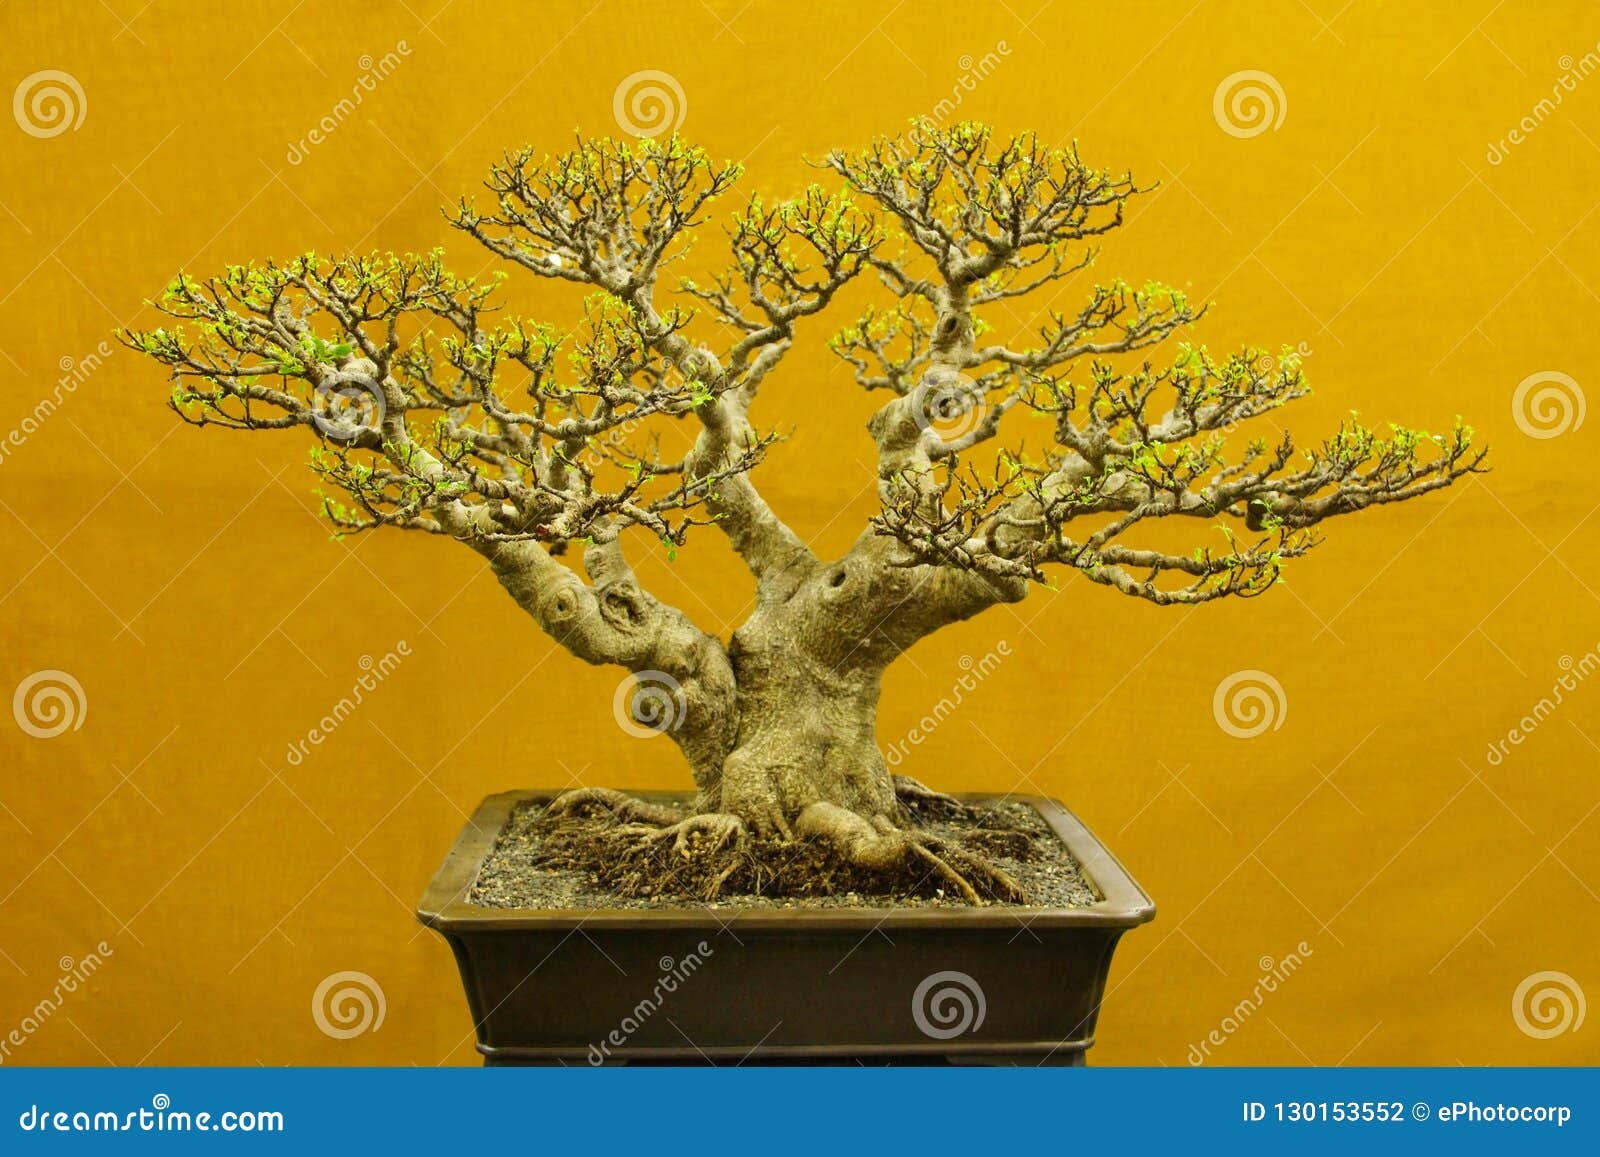 Paraziti bonsai, A great terapiesicoaching.ro site